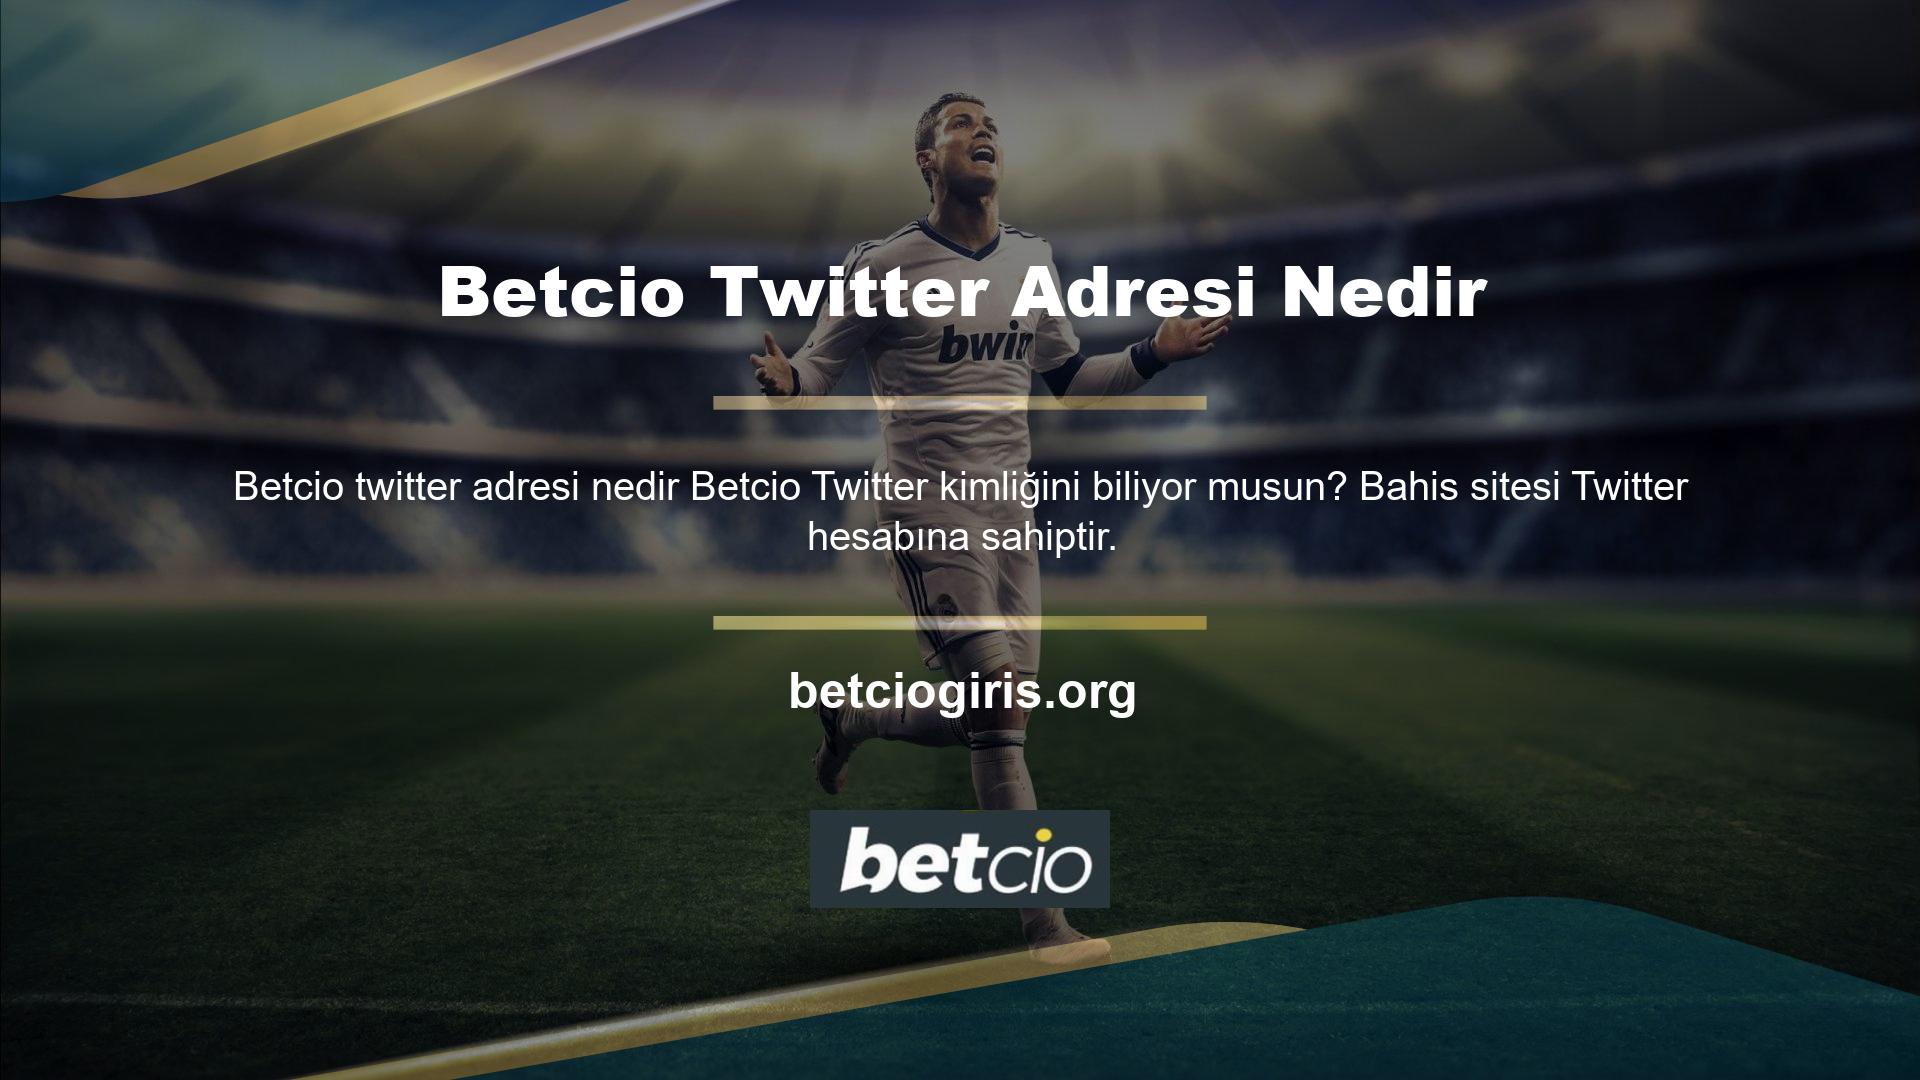 Betcio, Türkiye'nin önde gelen bahis sitesi olmak için sosyal medyayı etkin bir şekilde kullanıyor